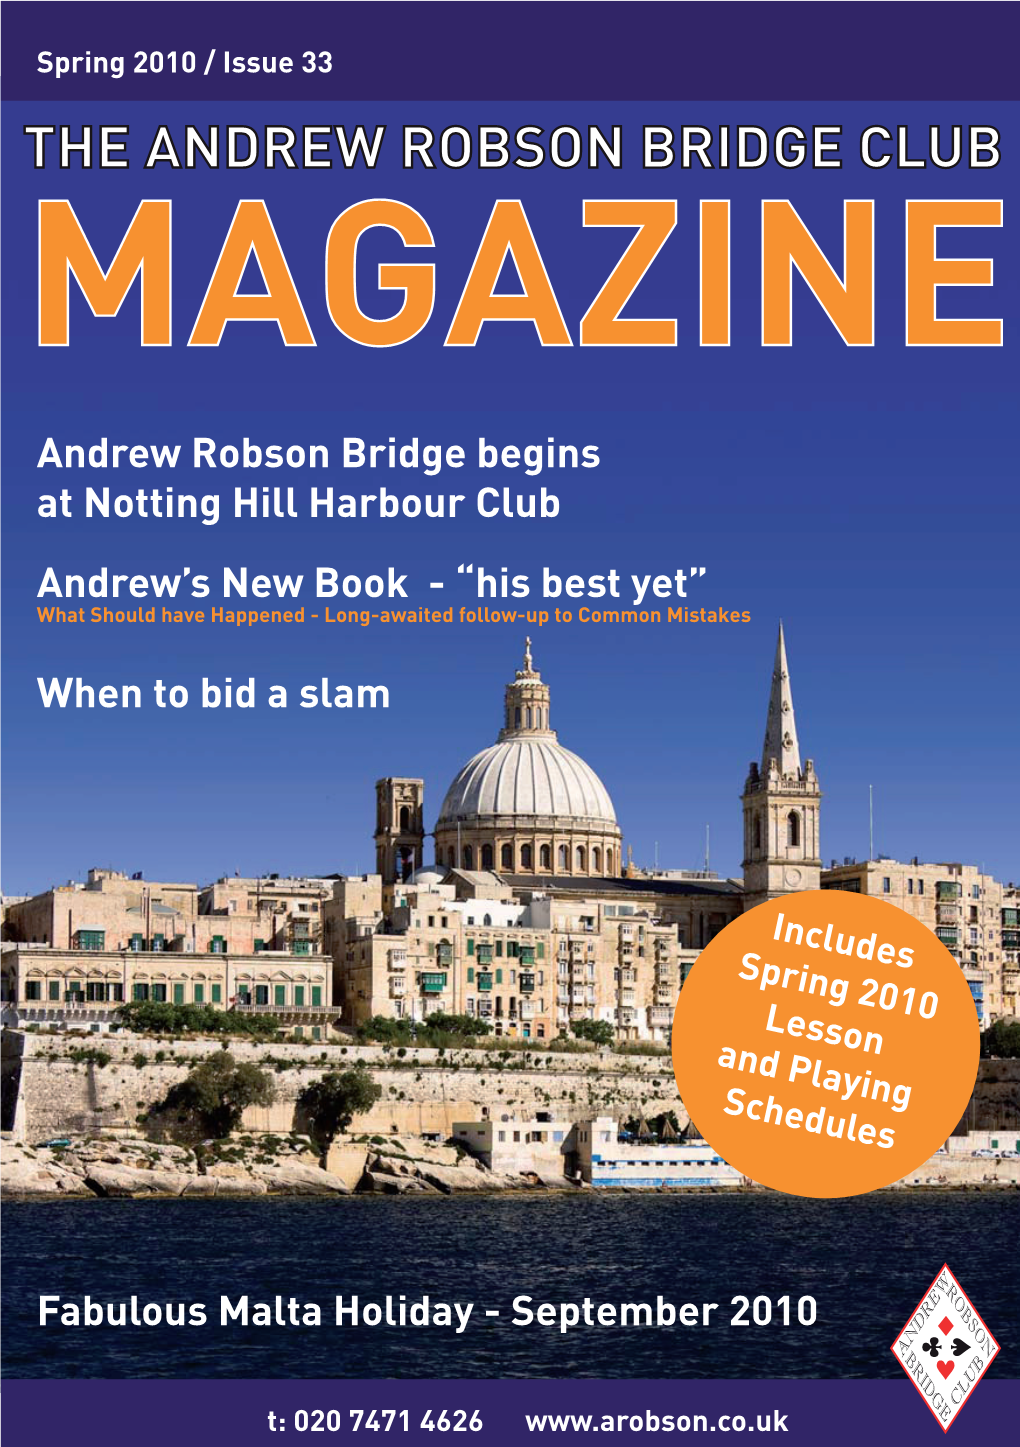 The Andrew Robson Bridge Club Magazine